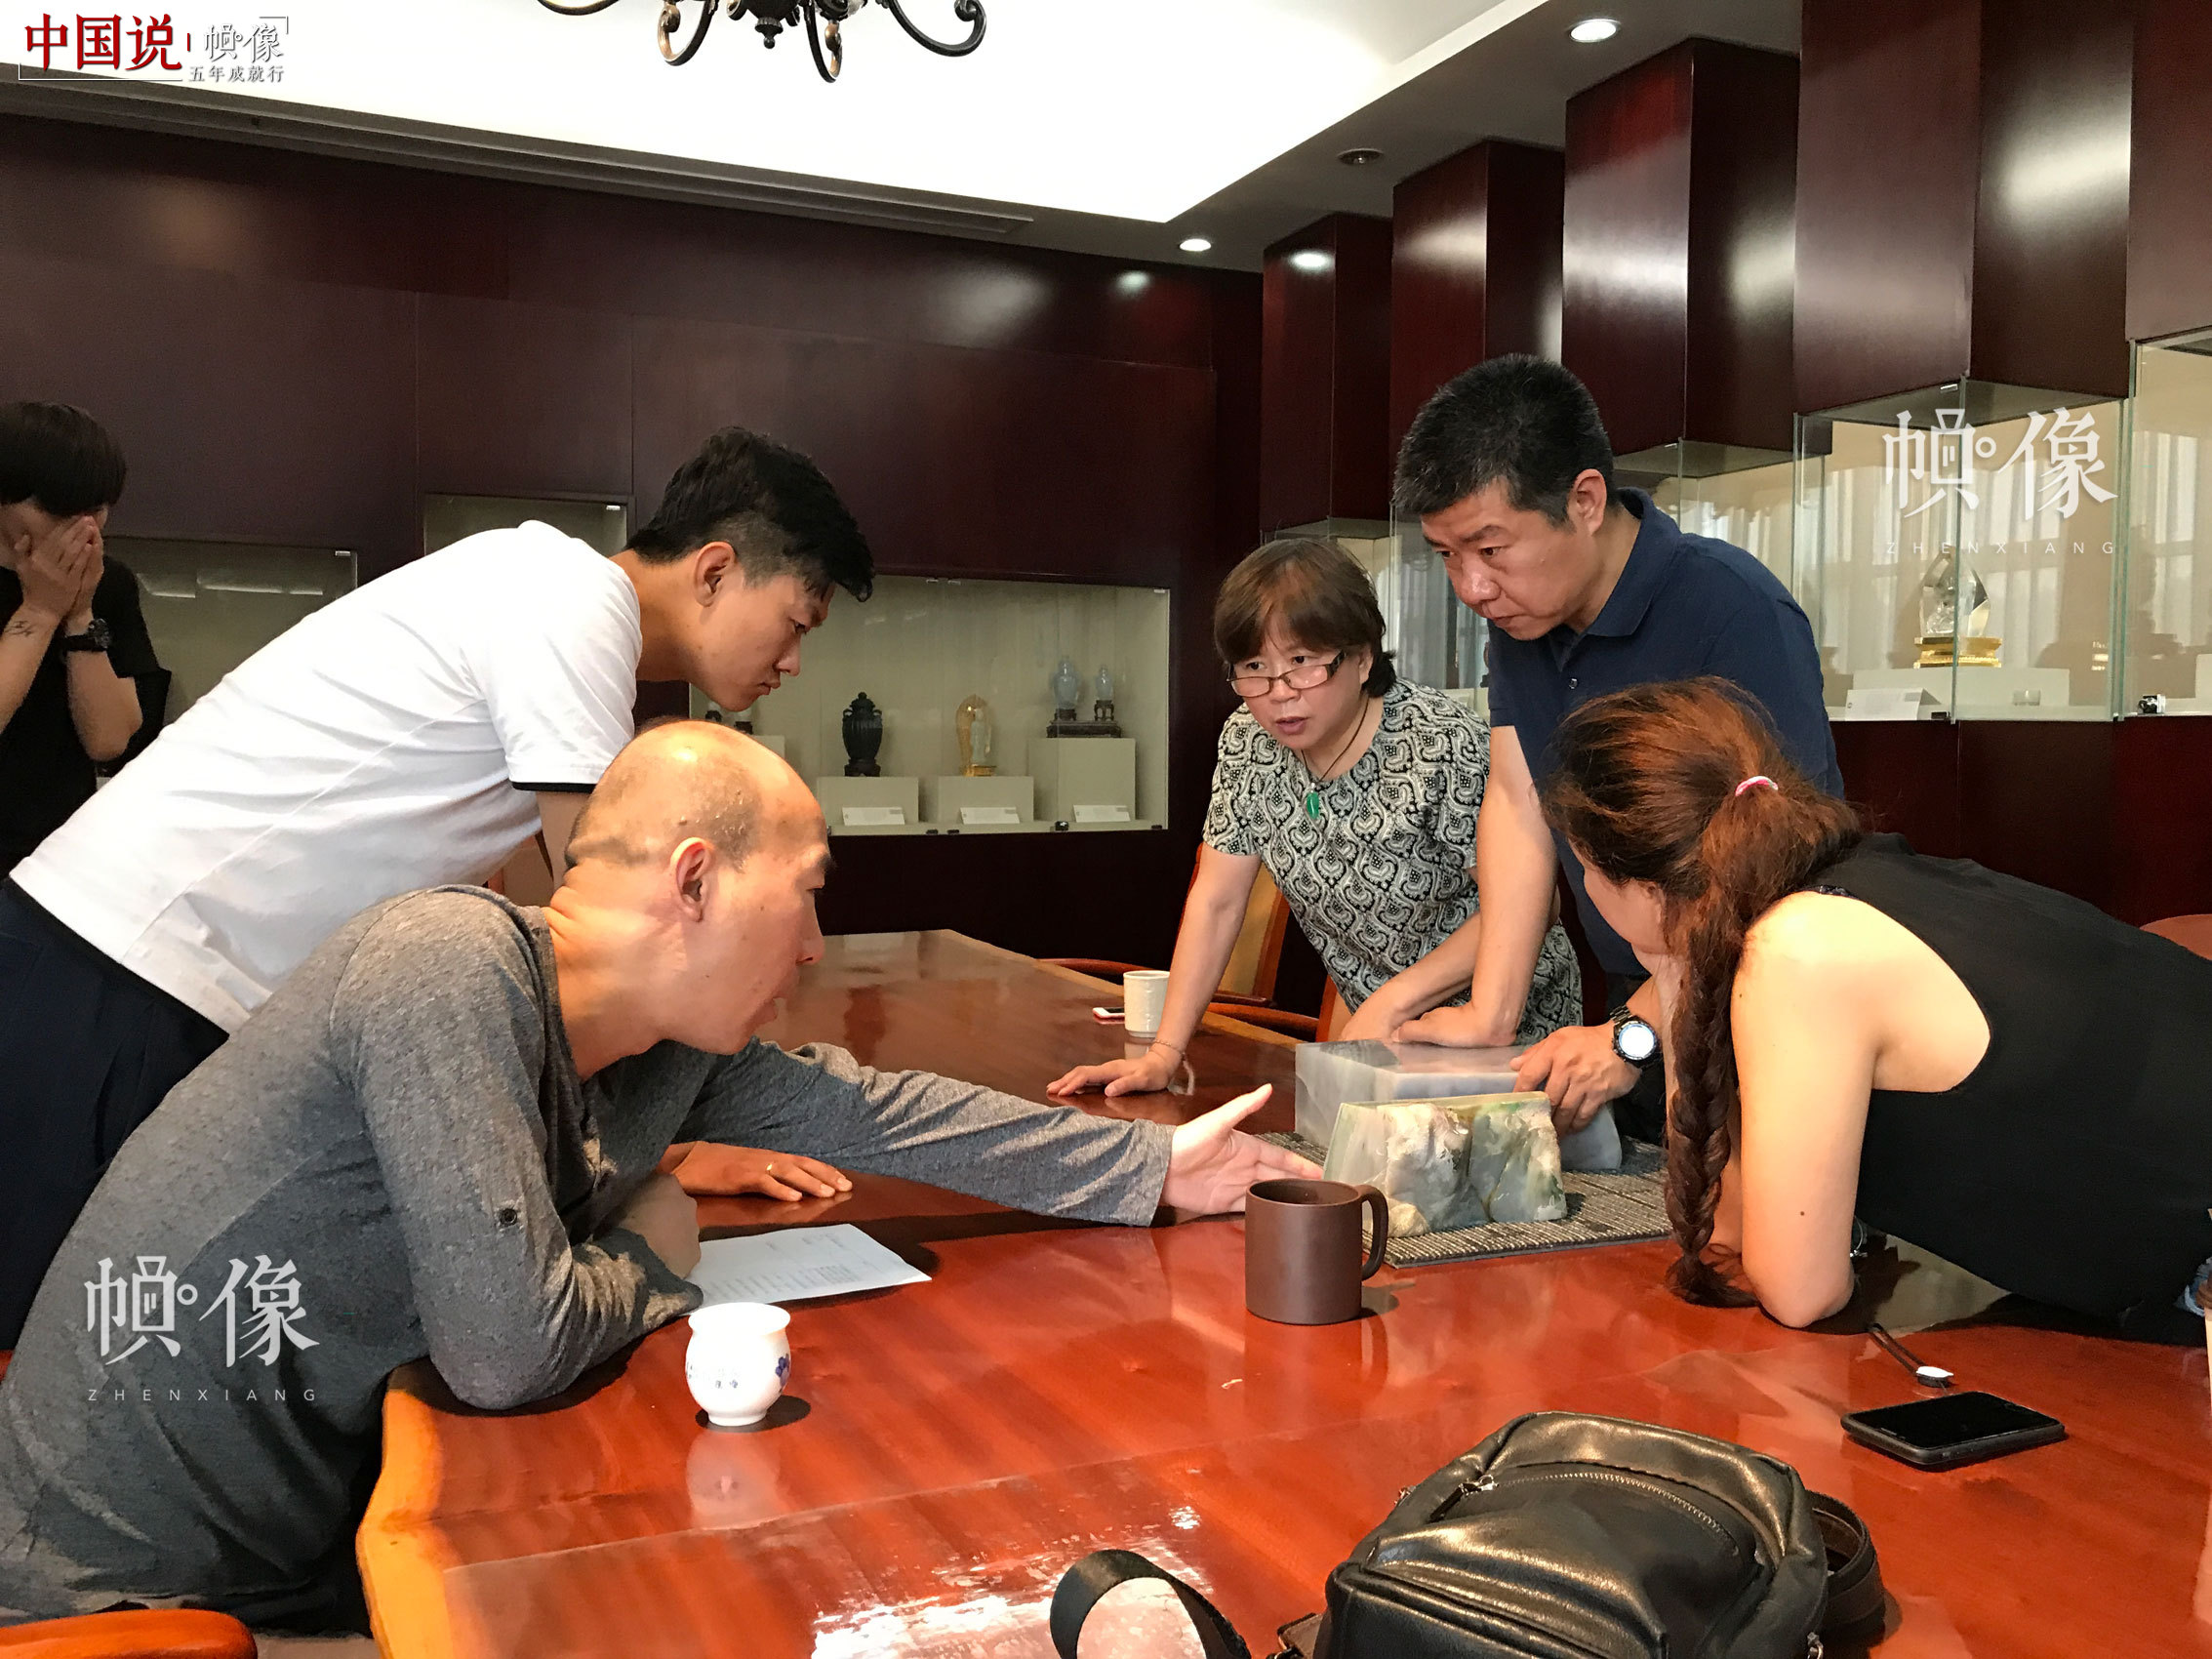 中国玉雕大师张铁成和团队成员就玉器雕刻进行讨论。张铁成大师团队供图